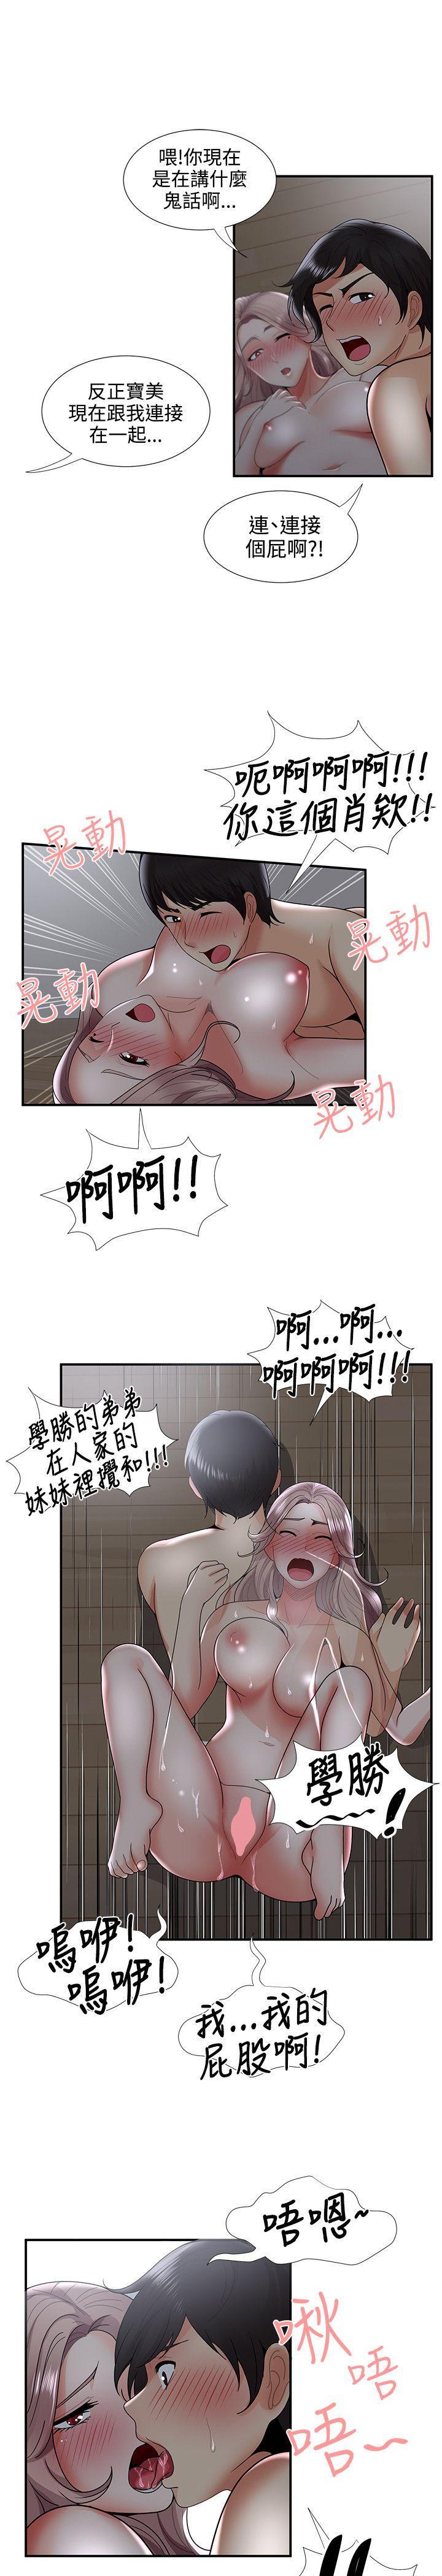 韩国污漫画 無法自拔的口紅膠 第34话 17